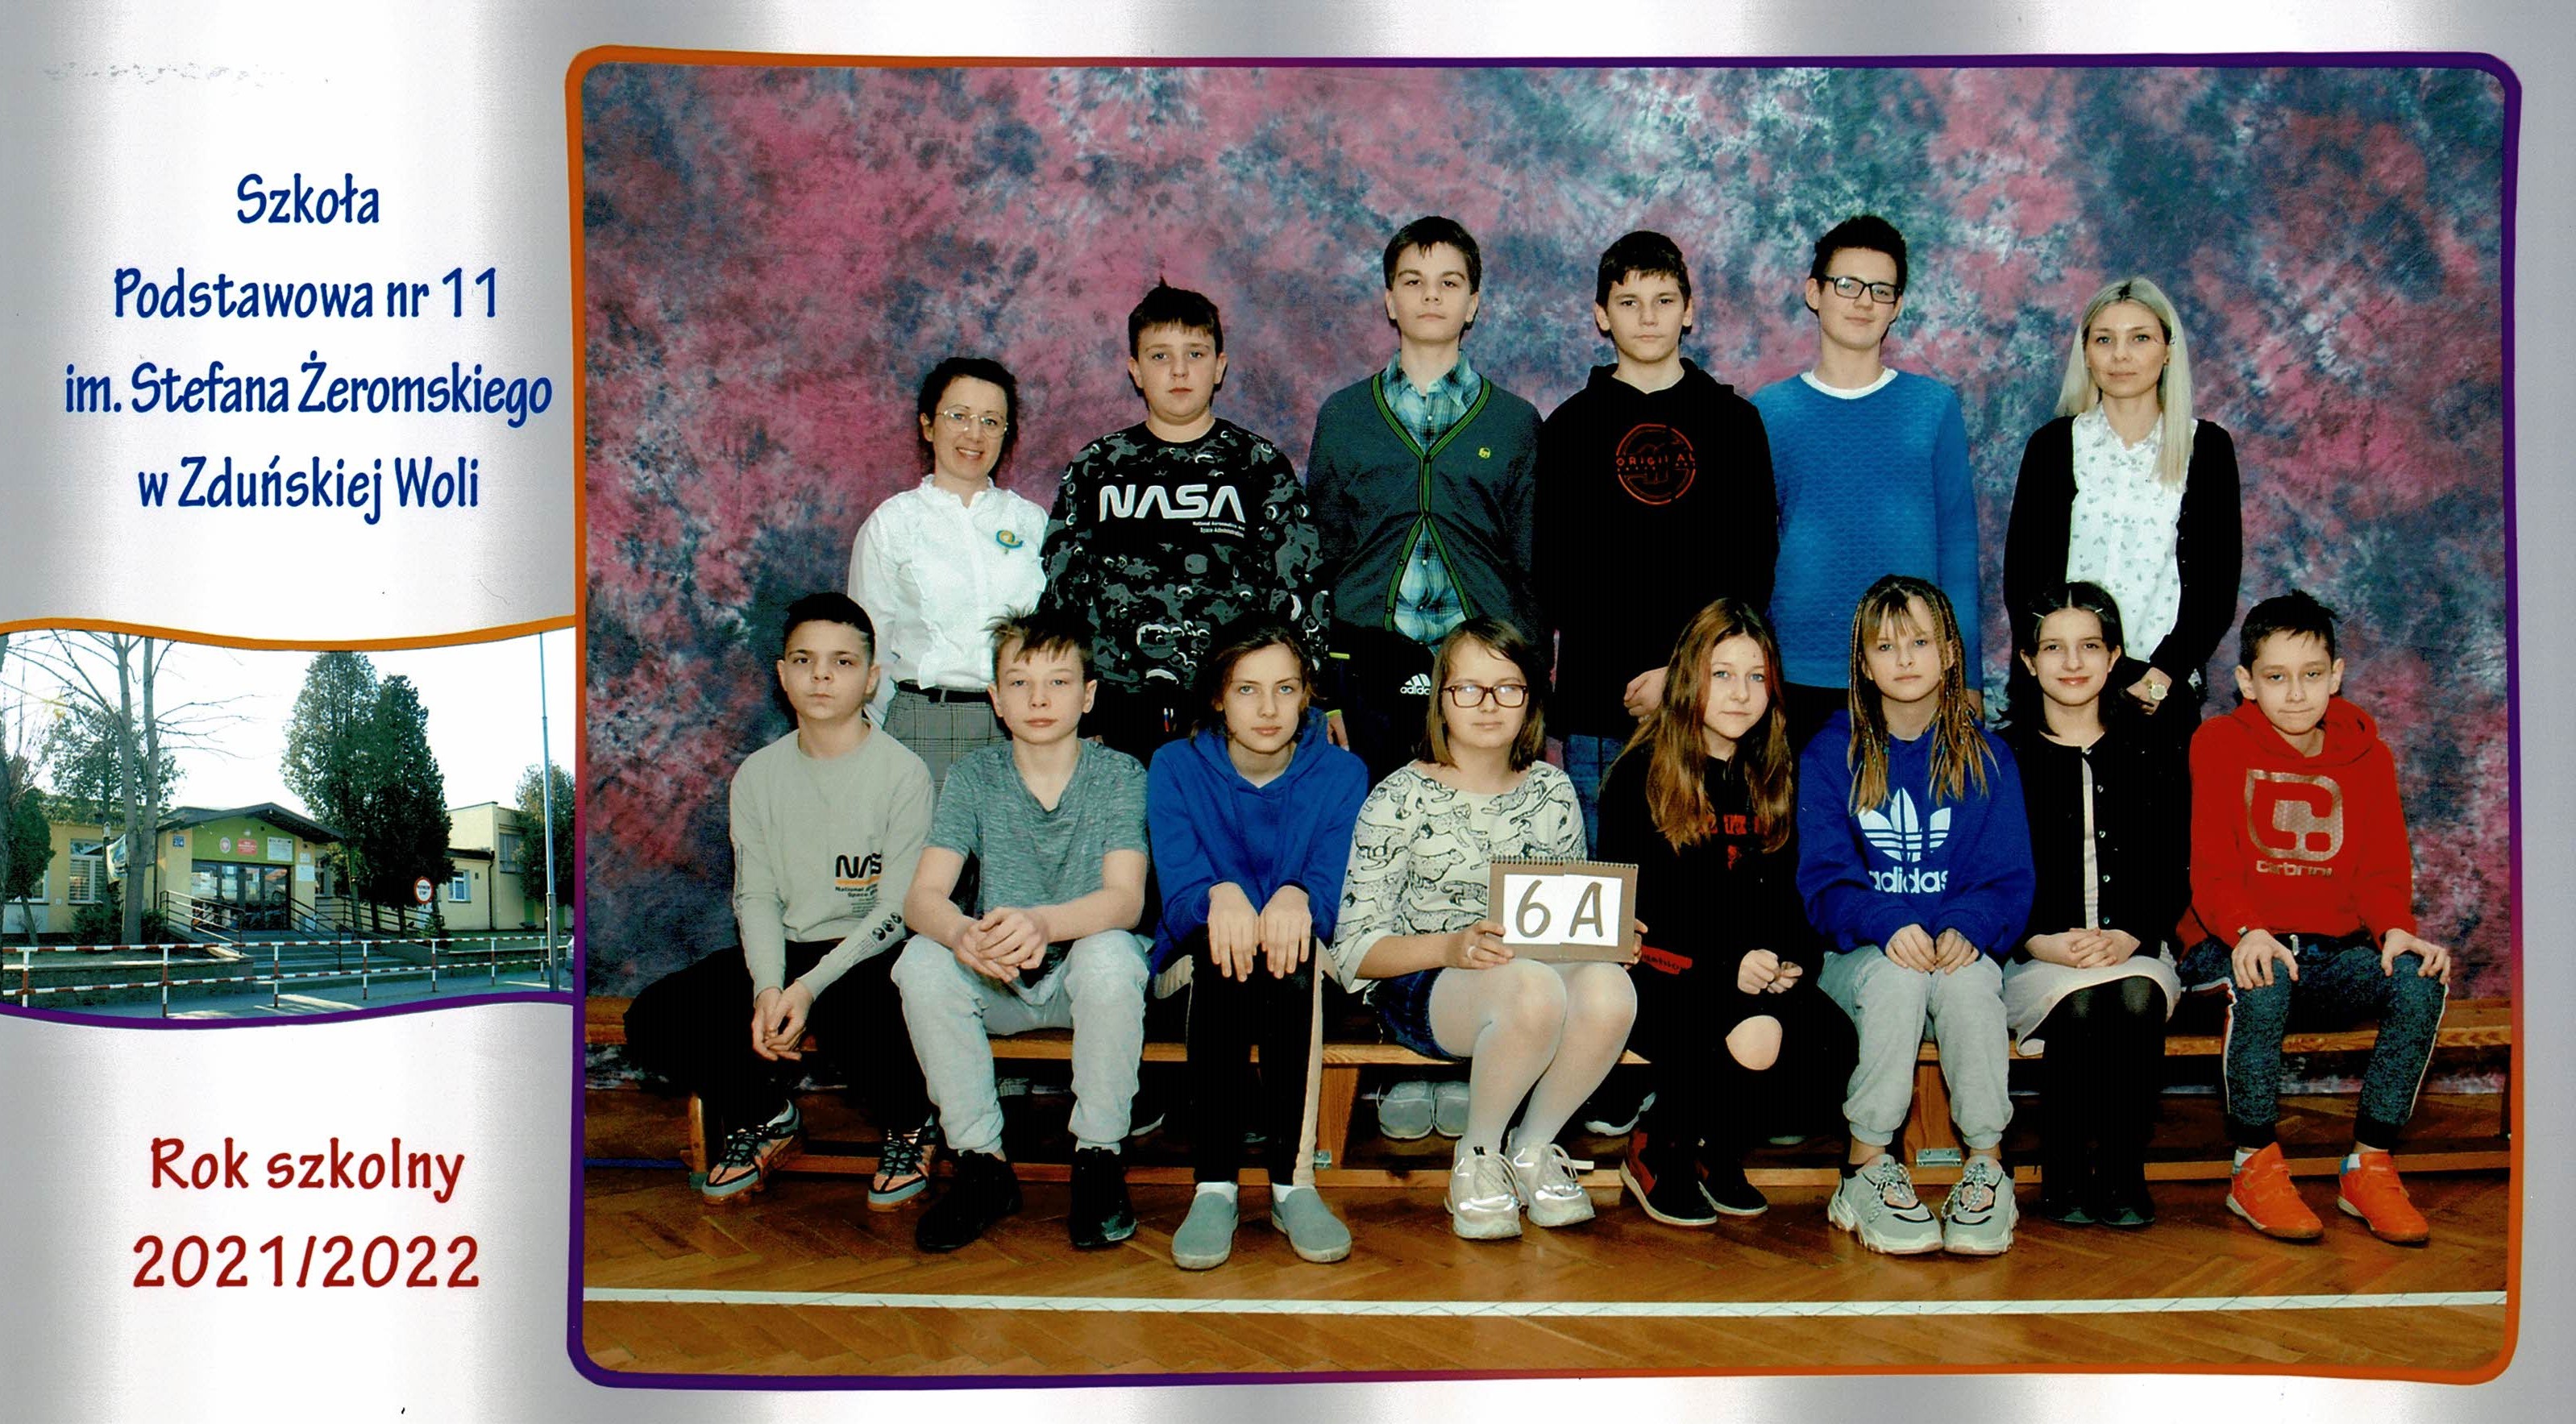 Uczniowie klasy 6A, dziewczynki i chłopcy siedzący na ławce z tabliczką "klasa 6a"